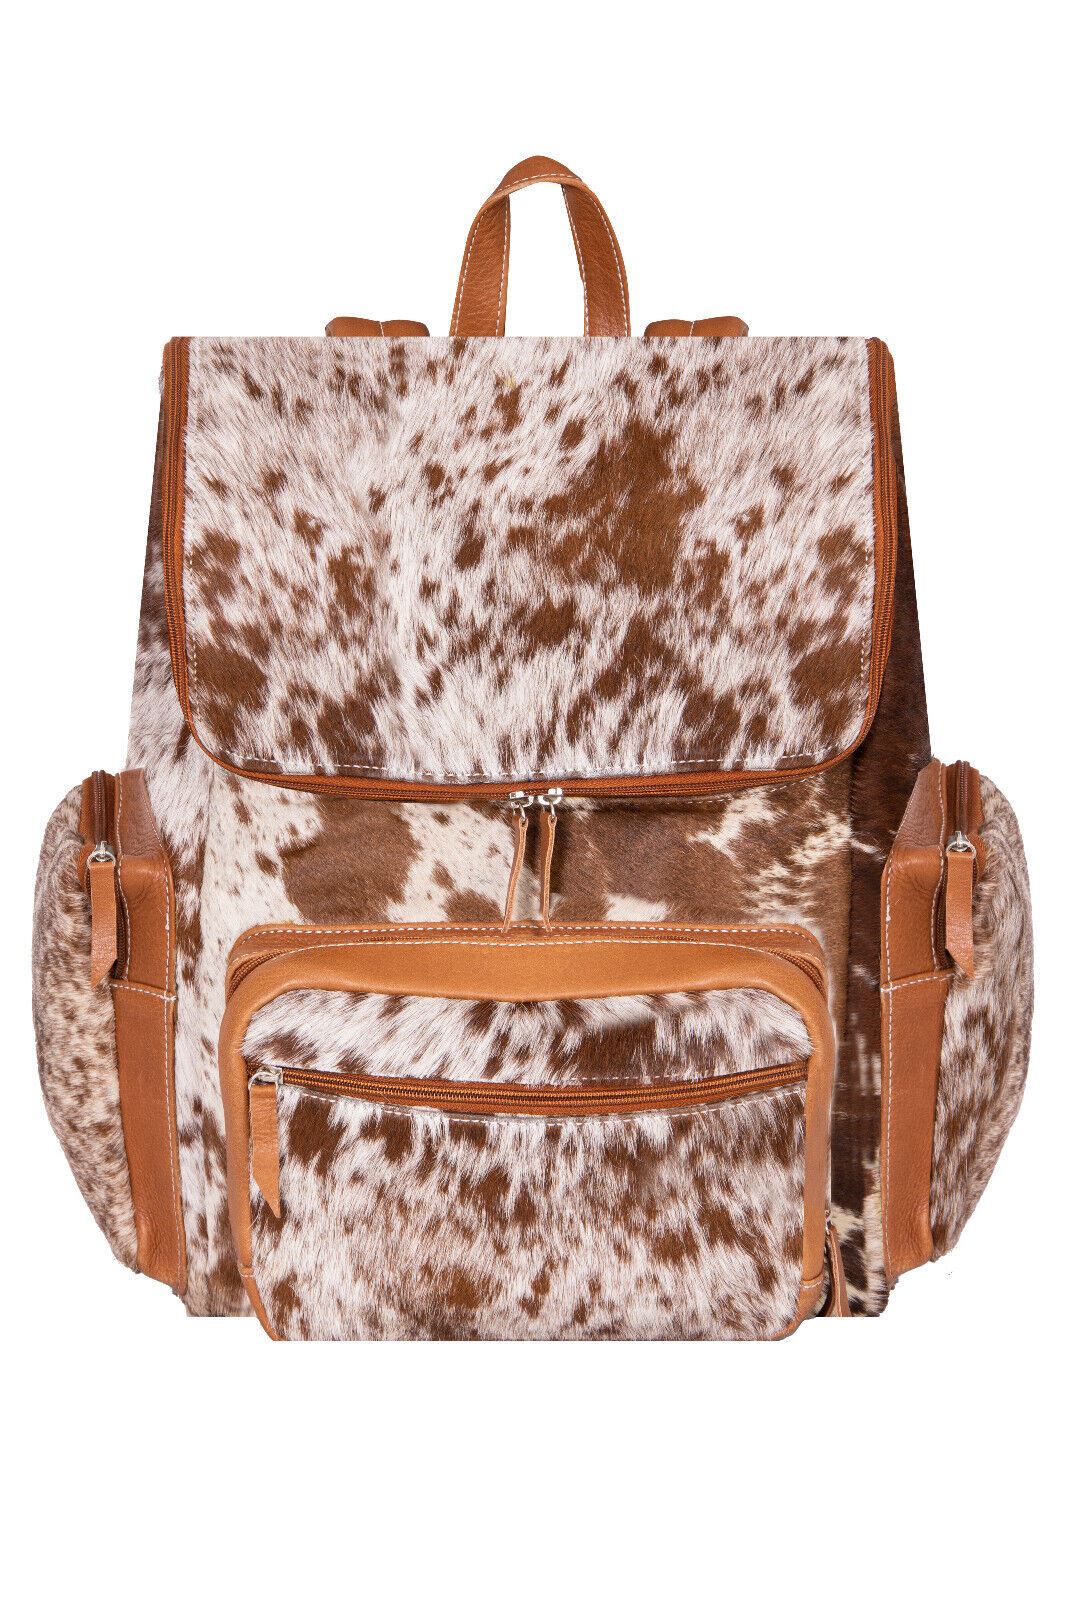 Deluxe Tan Brown Leather Backpack Bag Genuine Cowhide &amp; Cow Fur Travel Rucksack